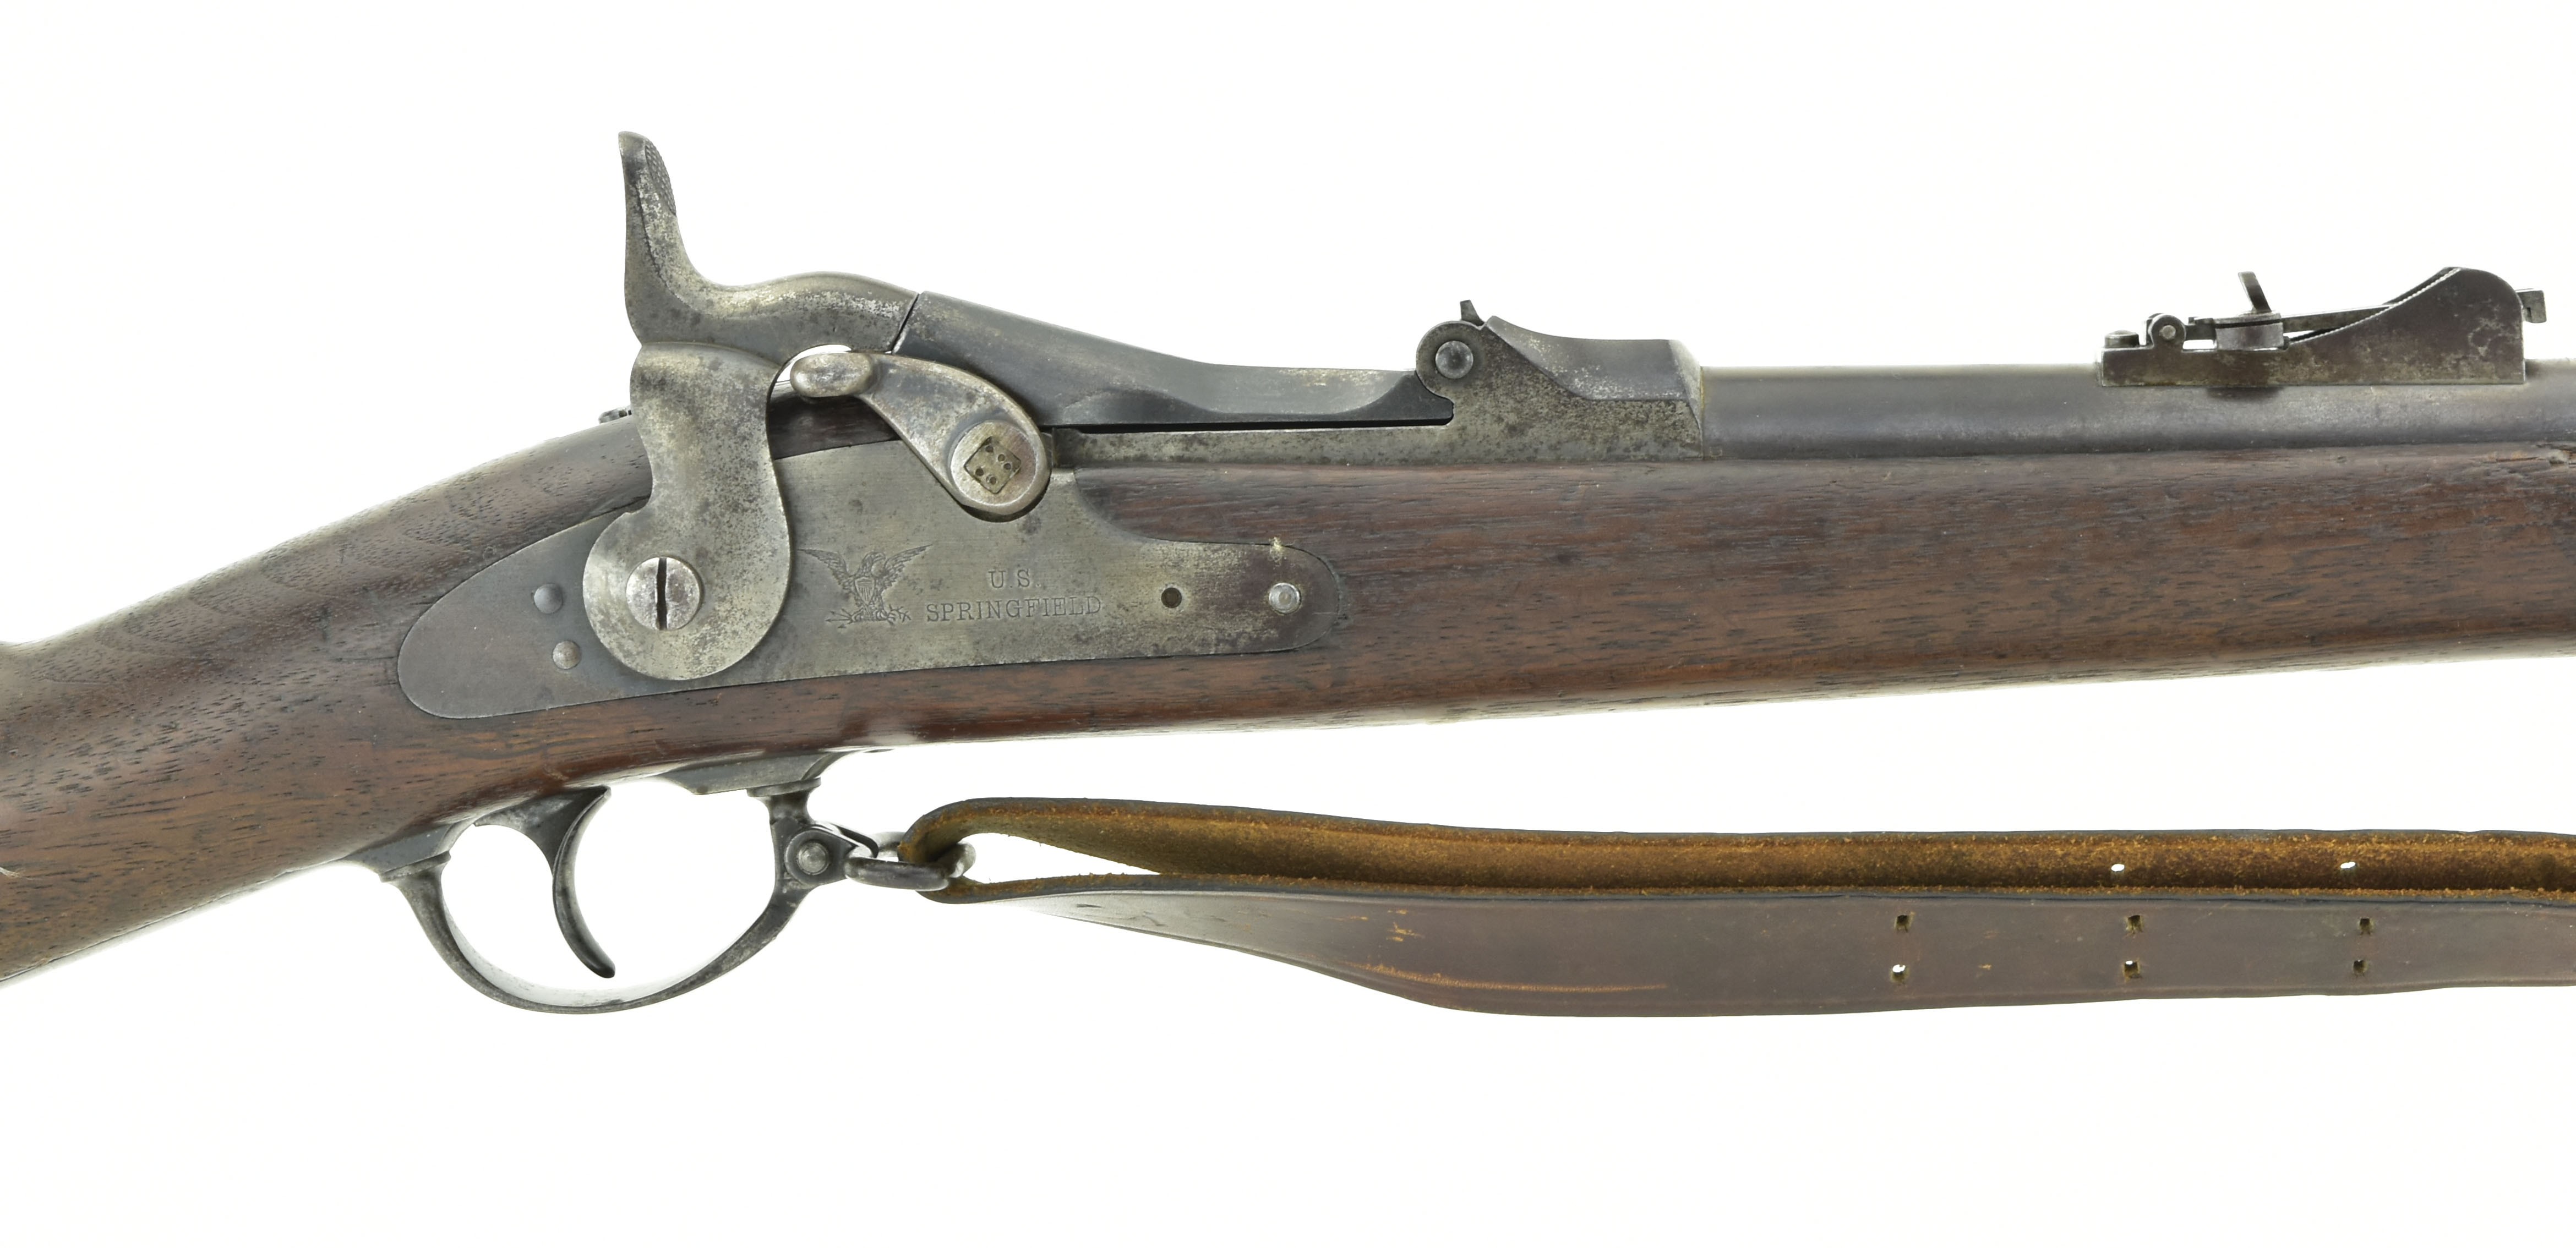 1873 springfield trapdoor rifle serial numbers